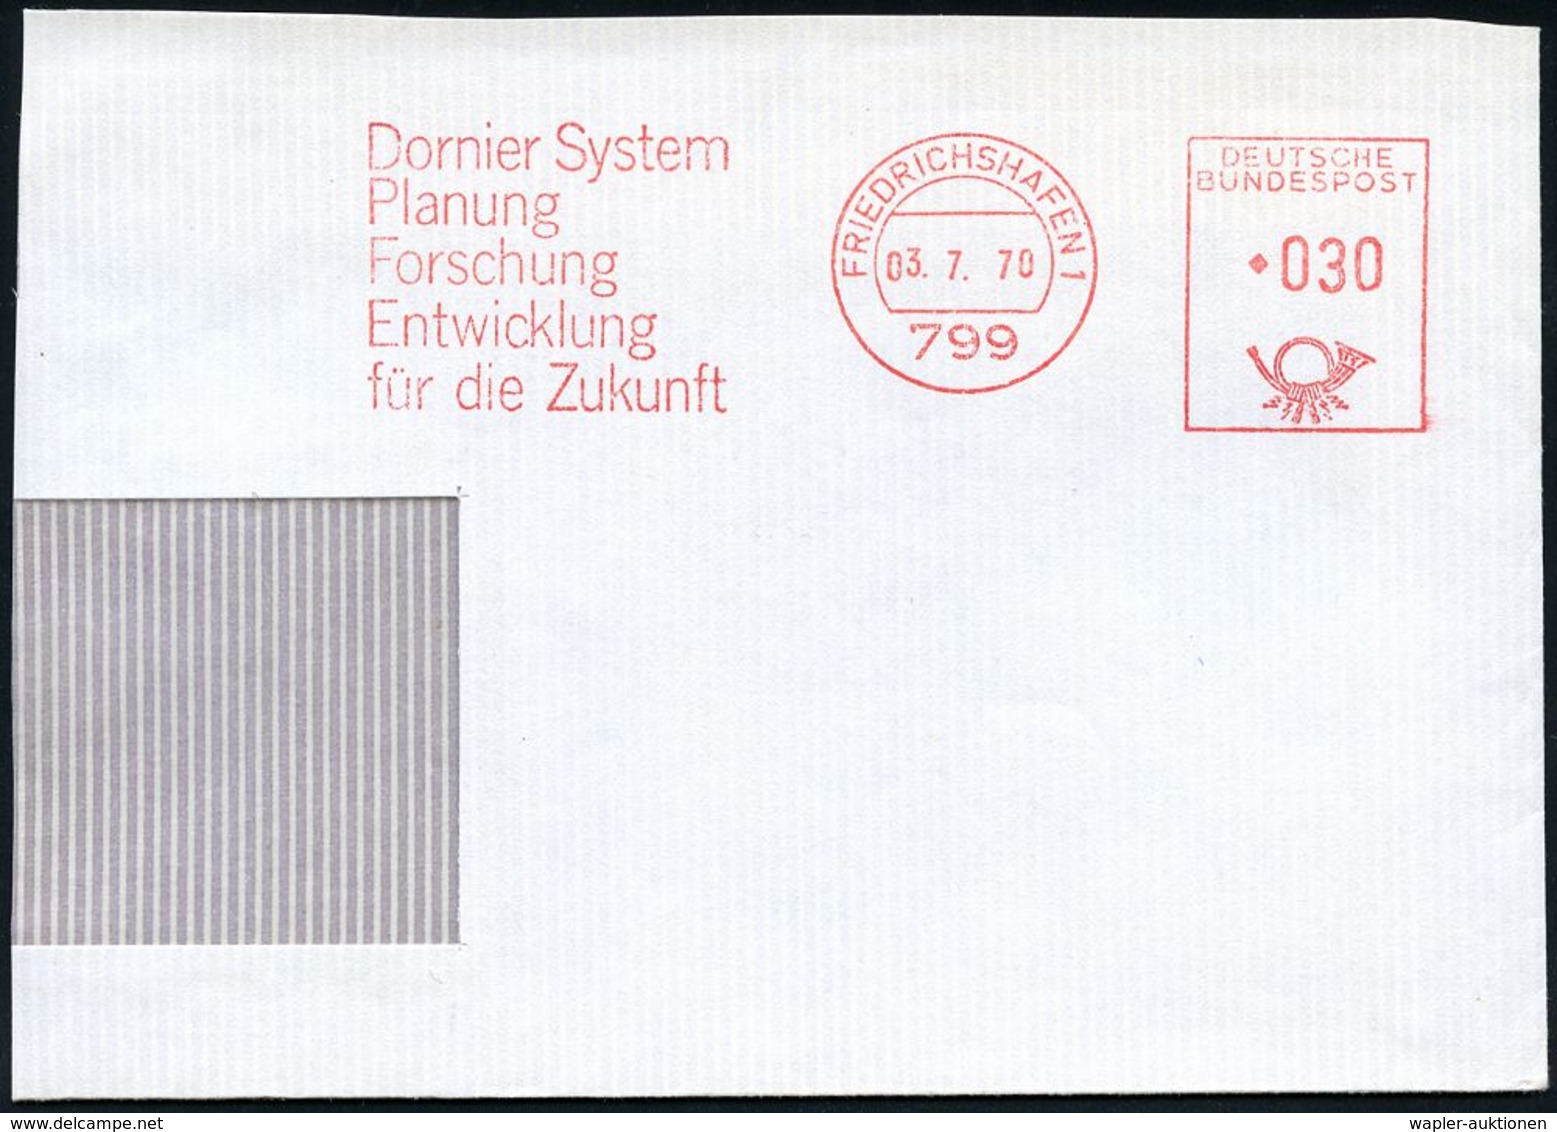 FLUGZEUGINDUSTRIE & -TYPEN : 799 #bzw.# 88045 FRIEDRICHSHAFEN 1/ Dornier System.. #bzw.# Dornier GmbH 1970/95 2 Verschie - Aerei